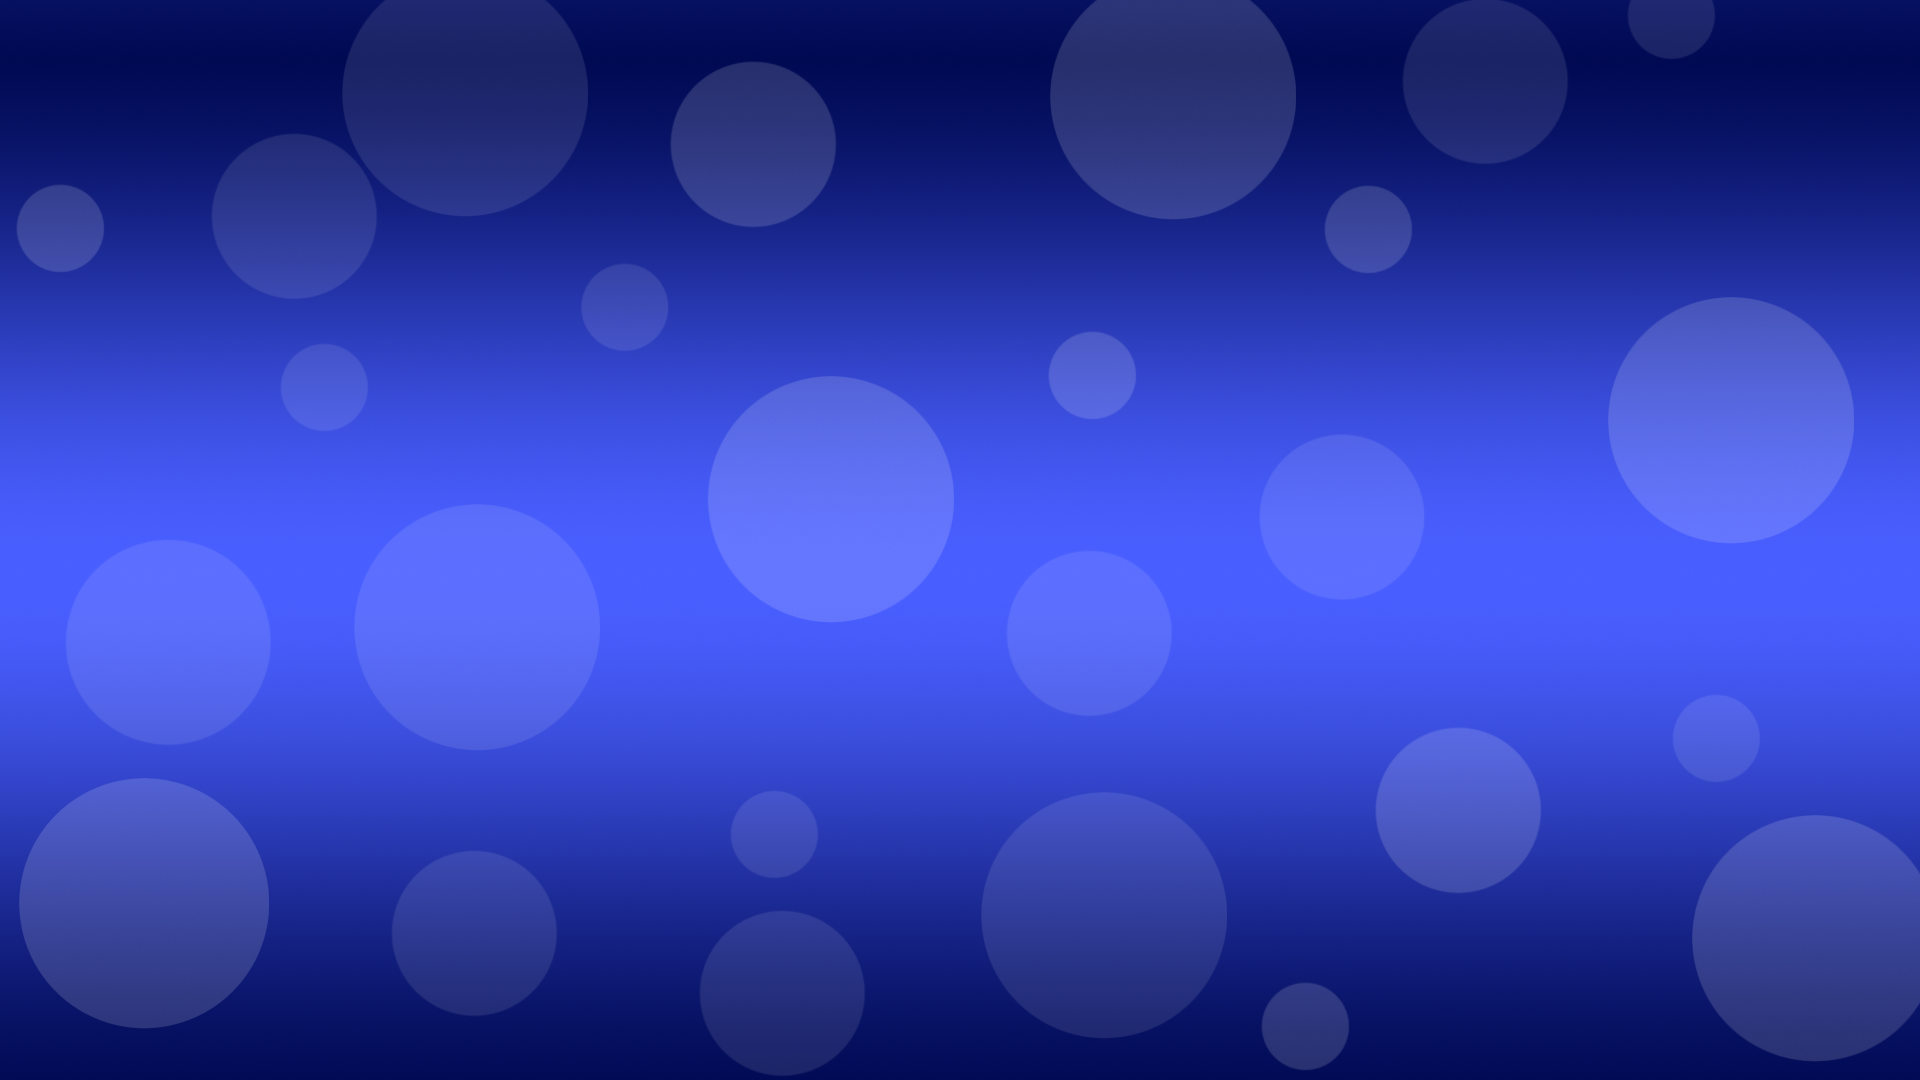 Blue Dots Wallpaper - Resolution:1920x1080 - ID:983856 - wallha.com